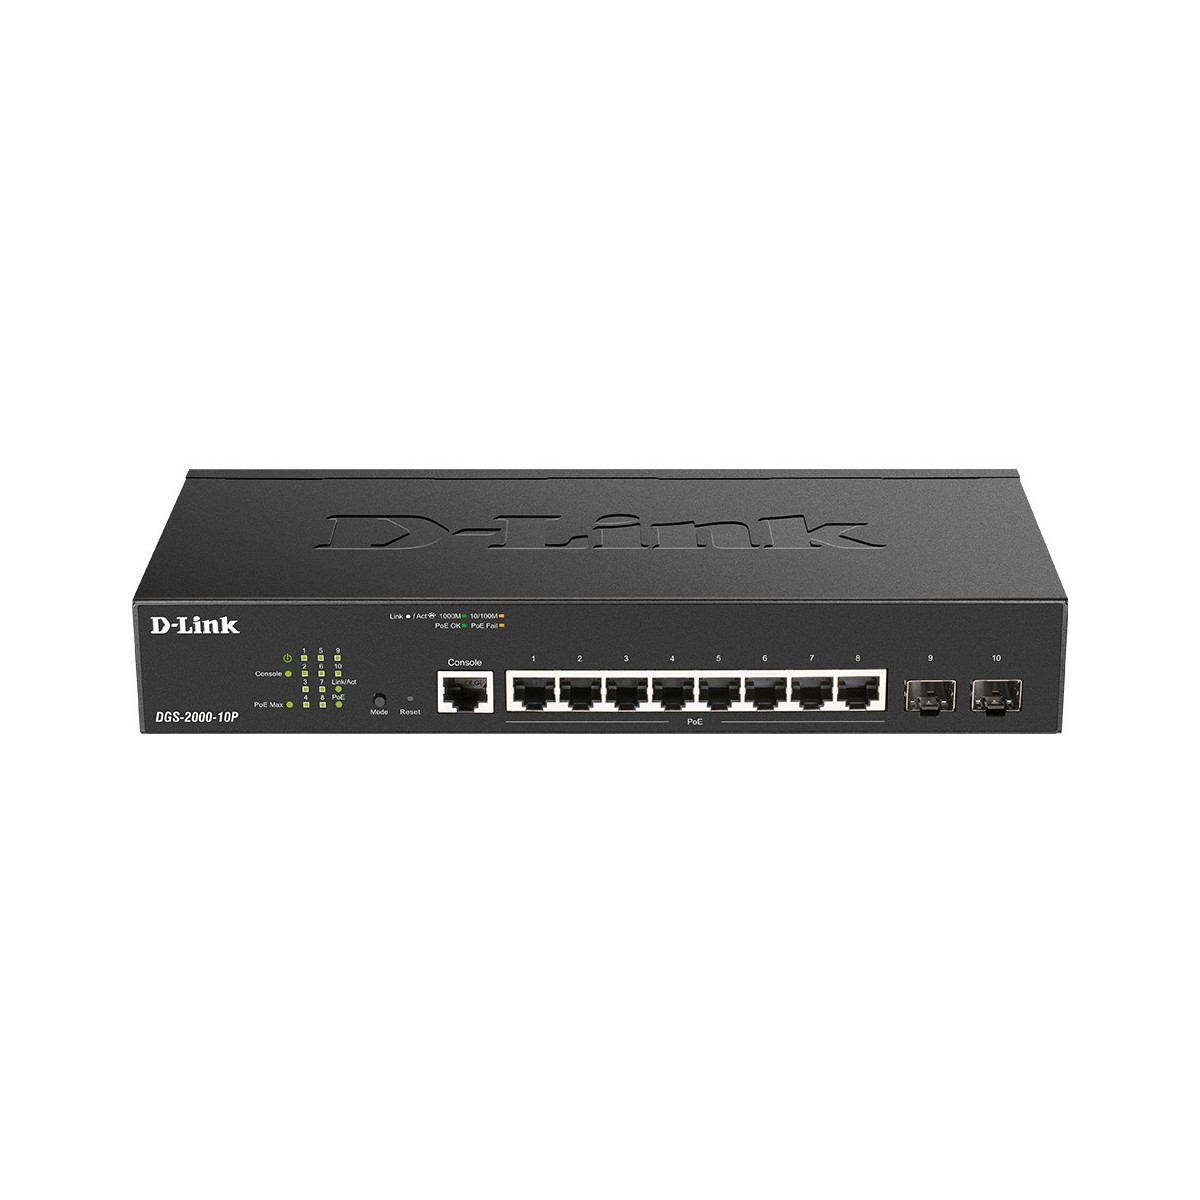 D-Link DGS-2000-10P - Managed - L2/L3 - Gigabit Ethernet (10/100/1000) - Power over Ethernet (PoE) - Rack mounting - 1U